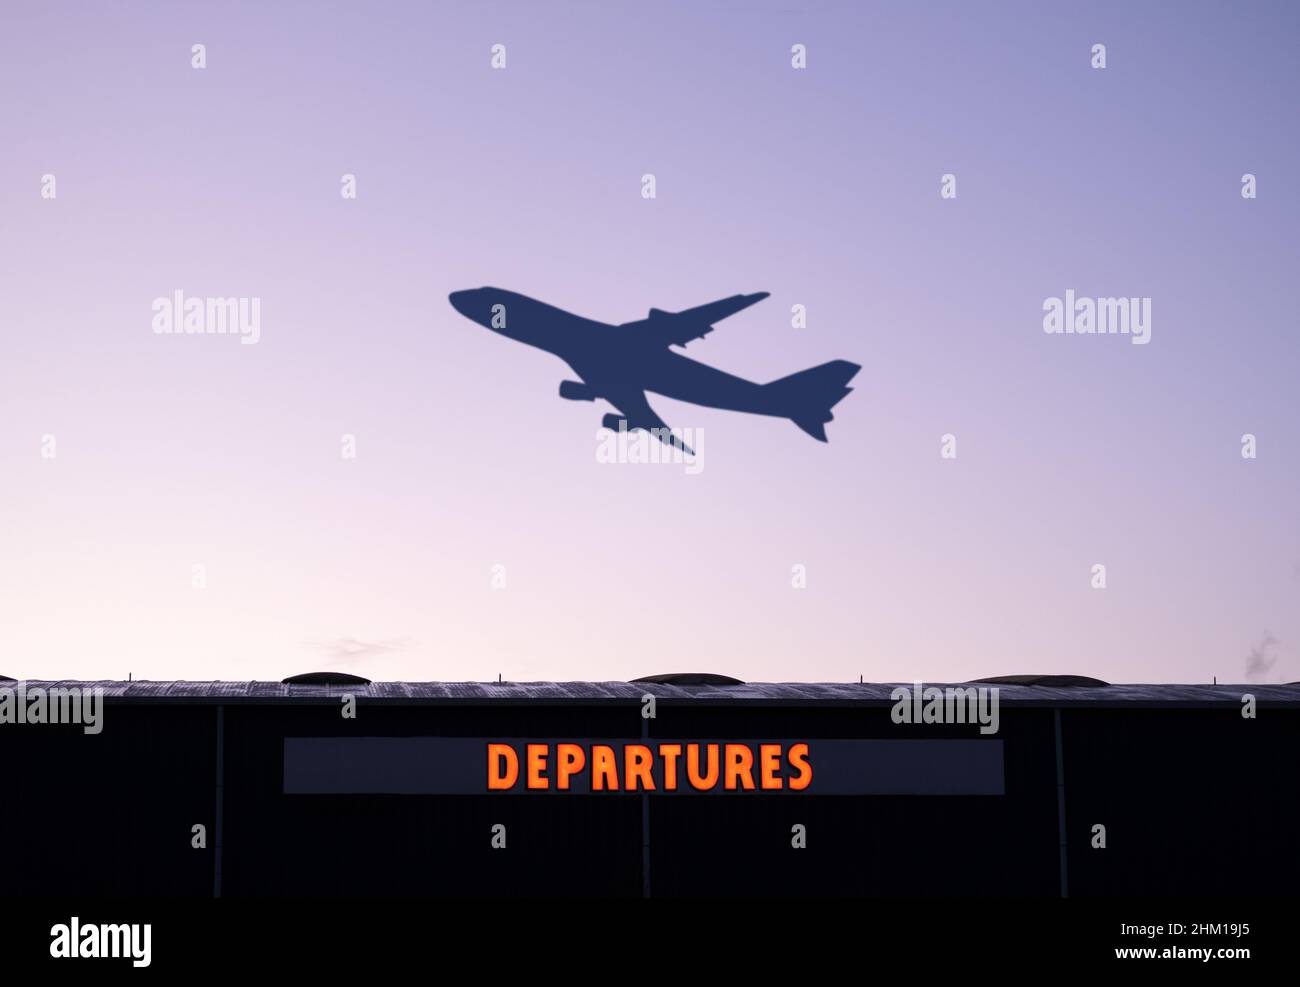 Ein Flugzeug, Das Bei Sonnenuntergang Abfliegt, Mit Dem Abfluggebäude Des Flughafens Im Vordergrund Stockfoto